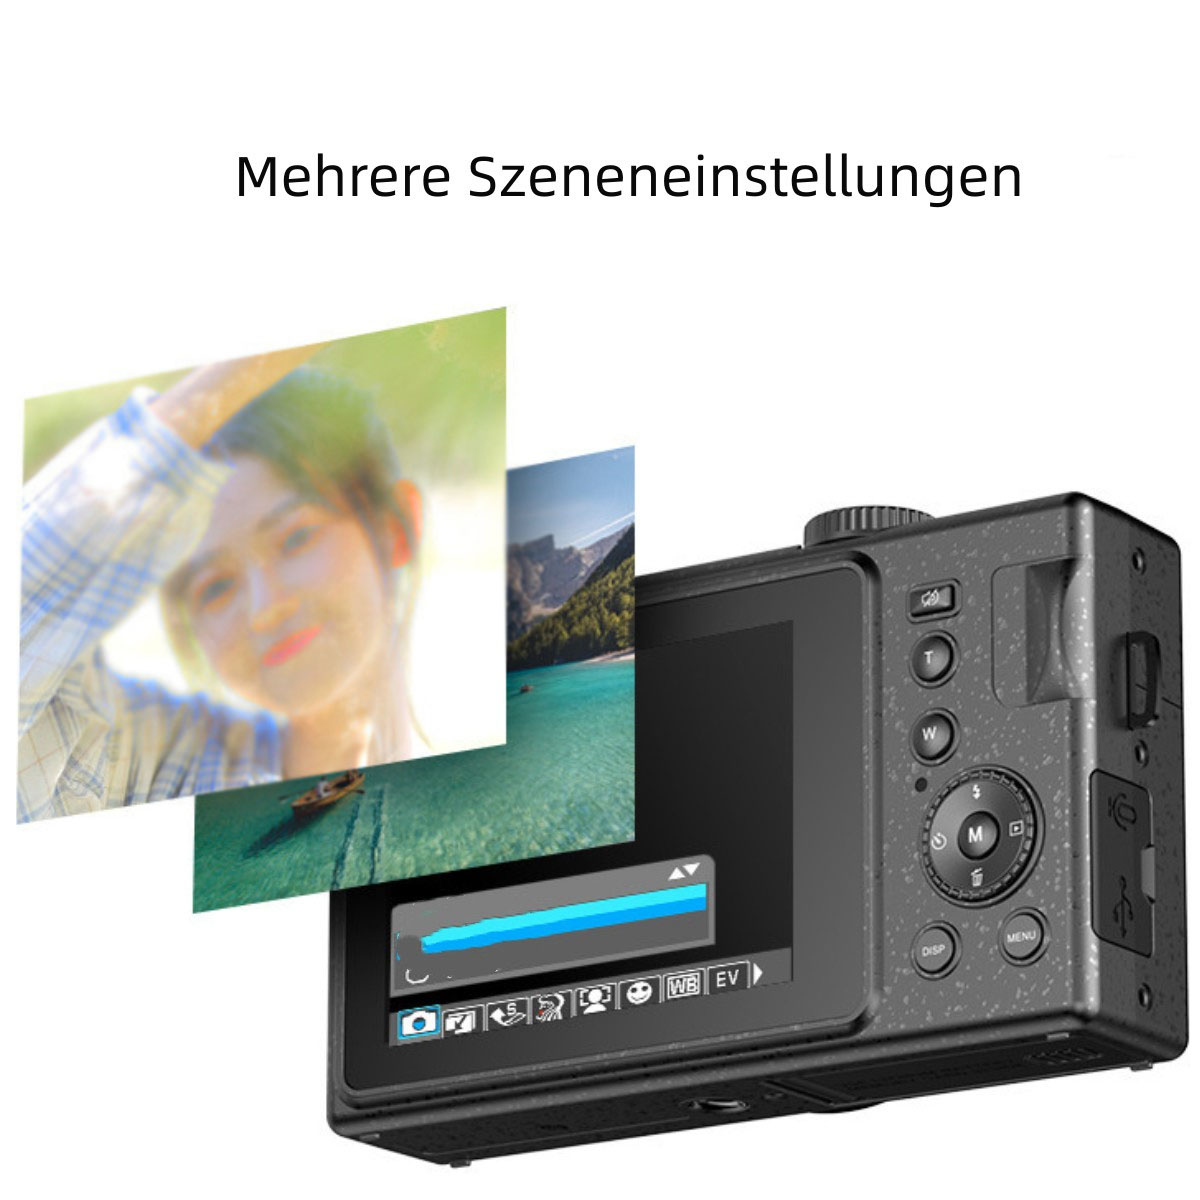 SYNTEK High-Definition-Digitalkamera - auf Stummschaltung Knopfdruck, schwarz mit Digitalkamera Gesichtserkennung